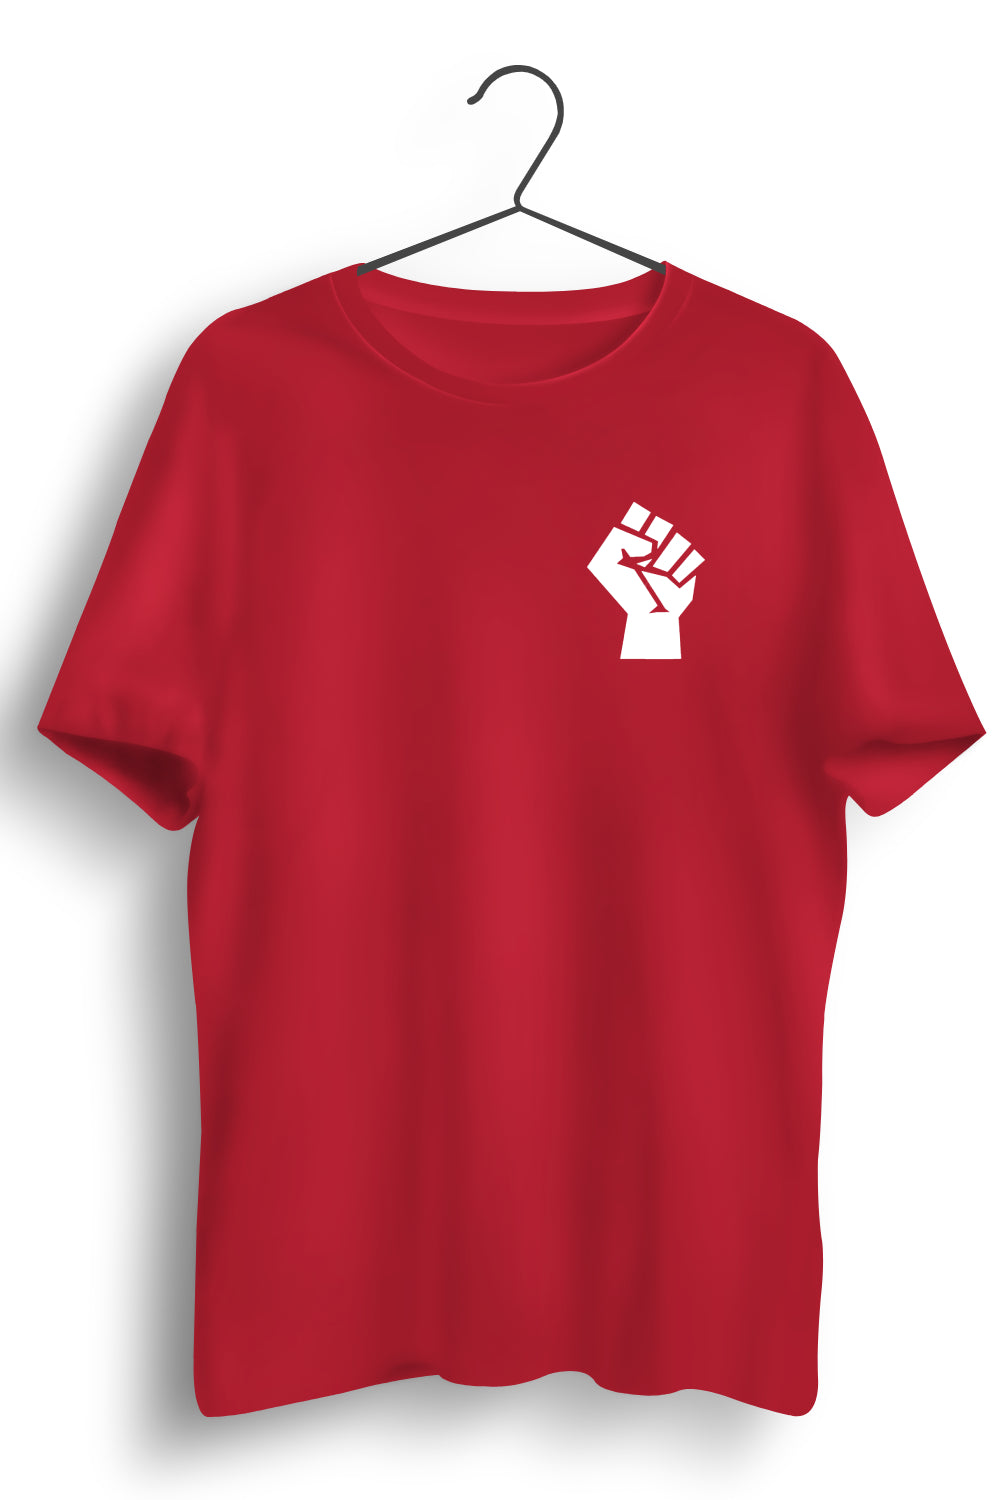 Raised Fist Graphic Printed Red Tshirt